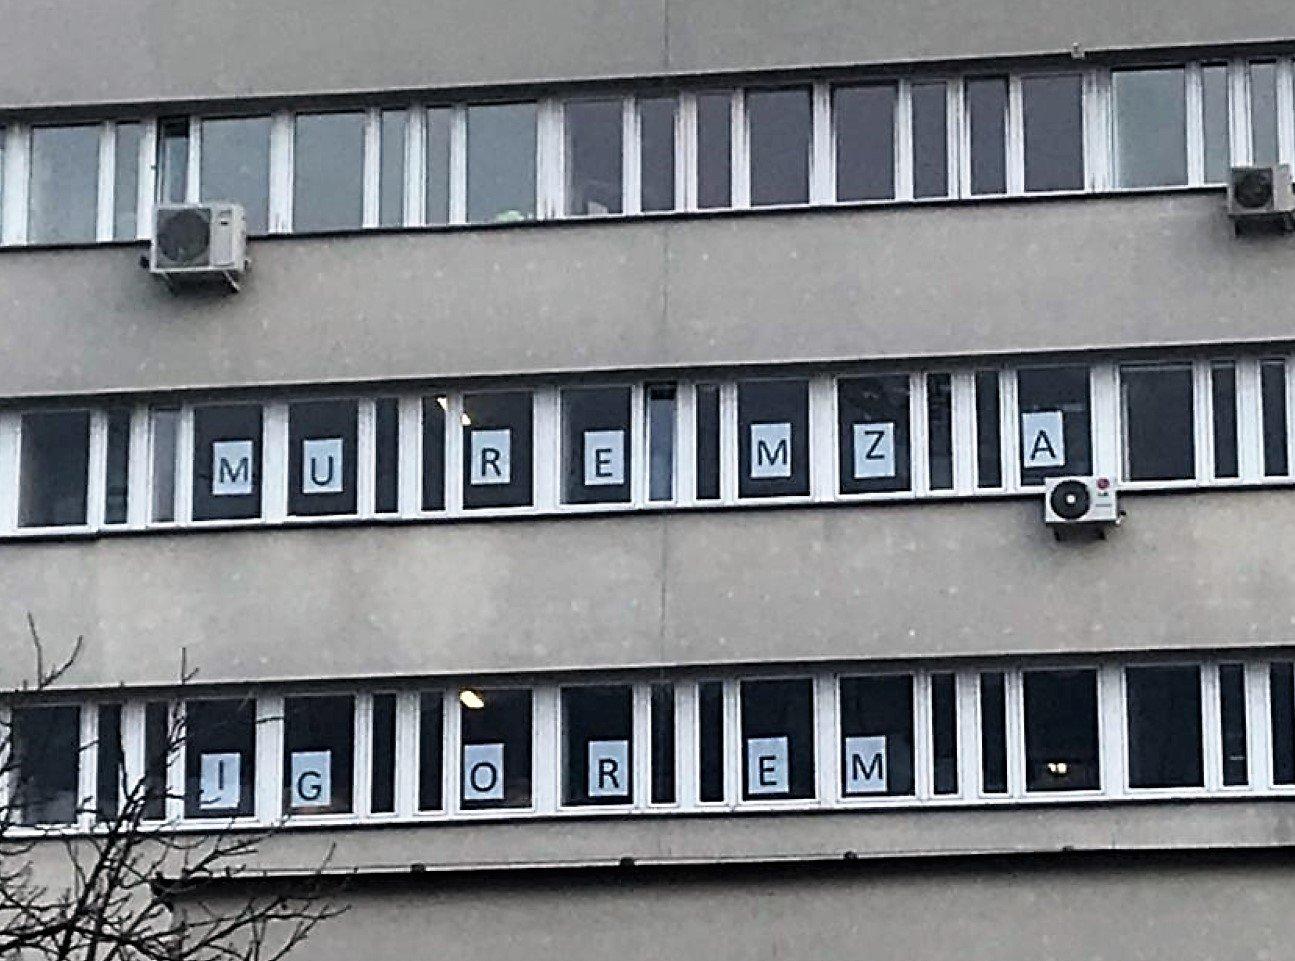 Okna sądu w Krakowie, w których wywieszono litery składające się na napis "Murem za Igorem"